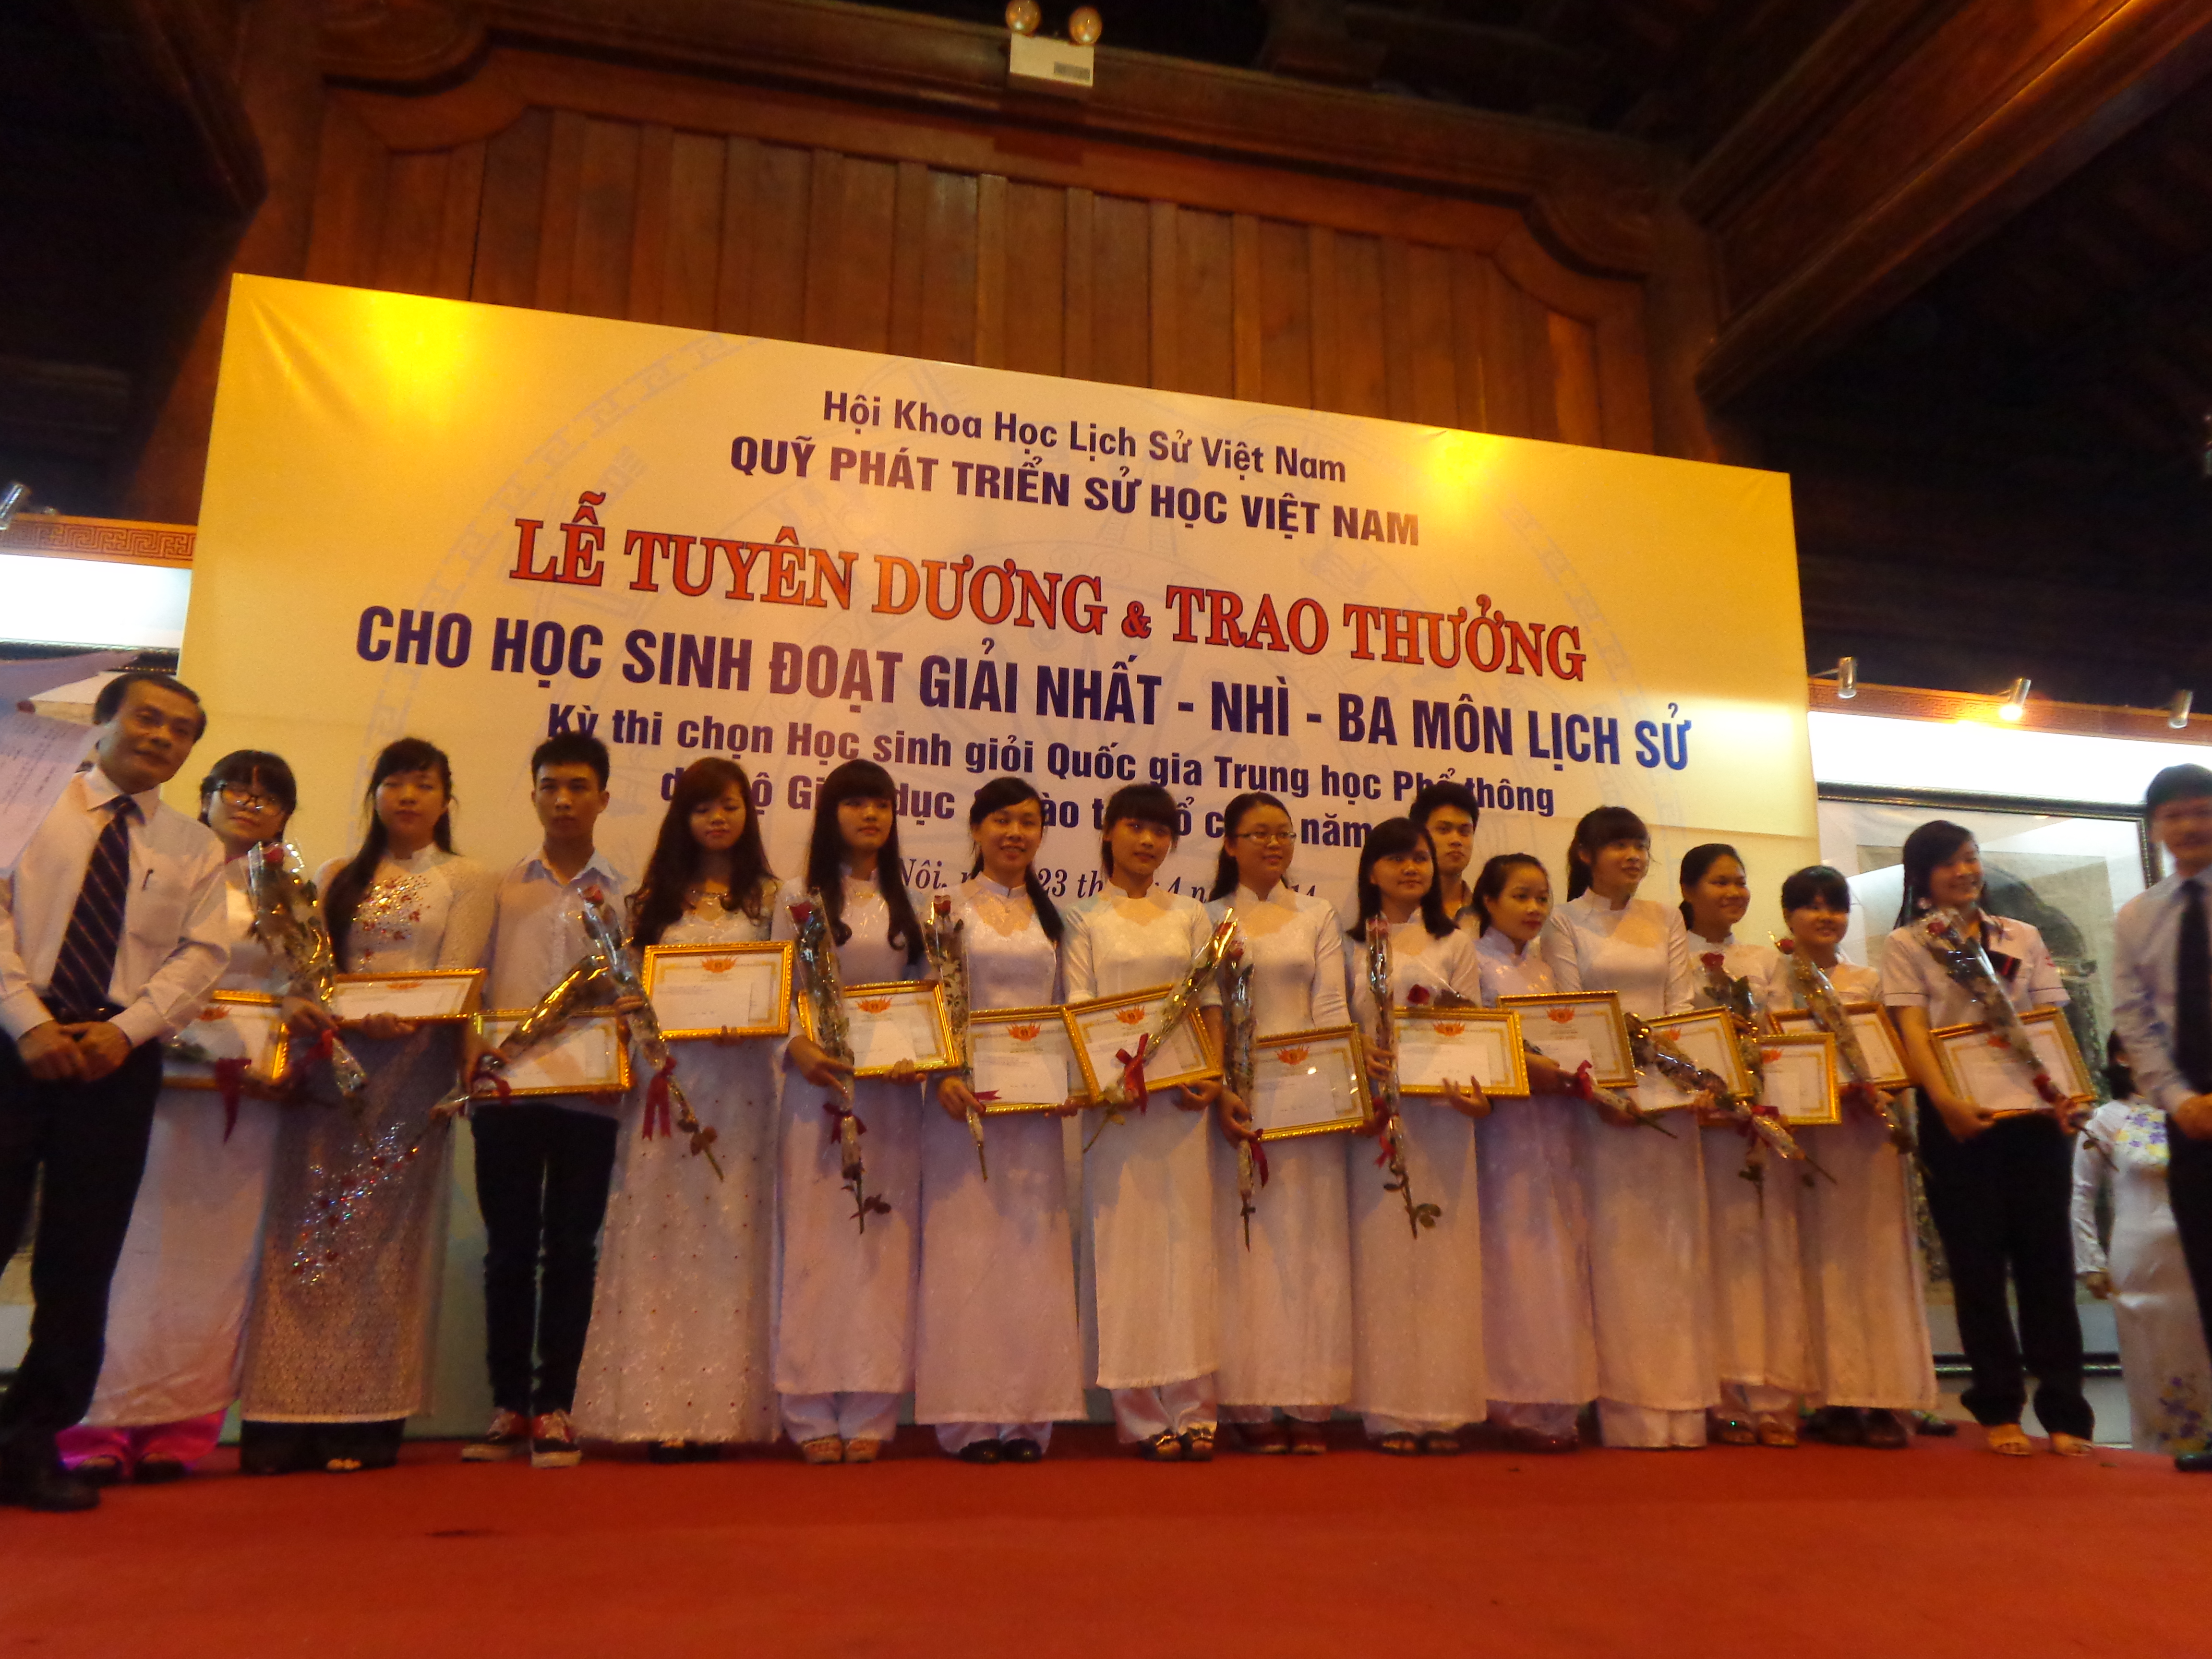 Chuyện học đường - Lần đầu tiên Hà Nội có HS đạt giải nhất quốc gia môn Lịch sử (Hình 2).